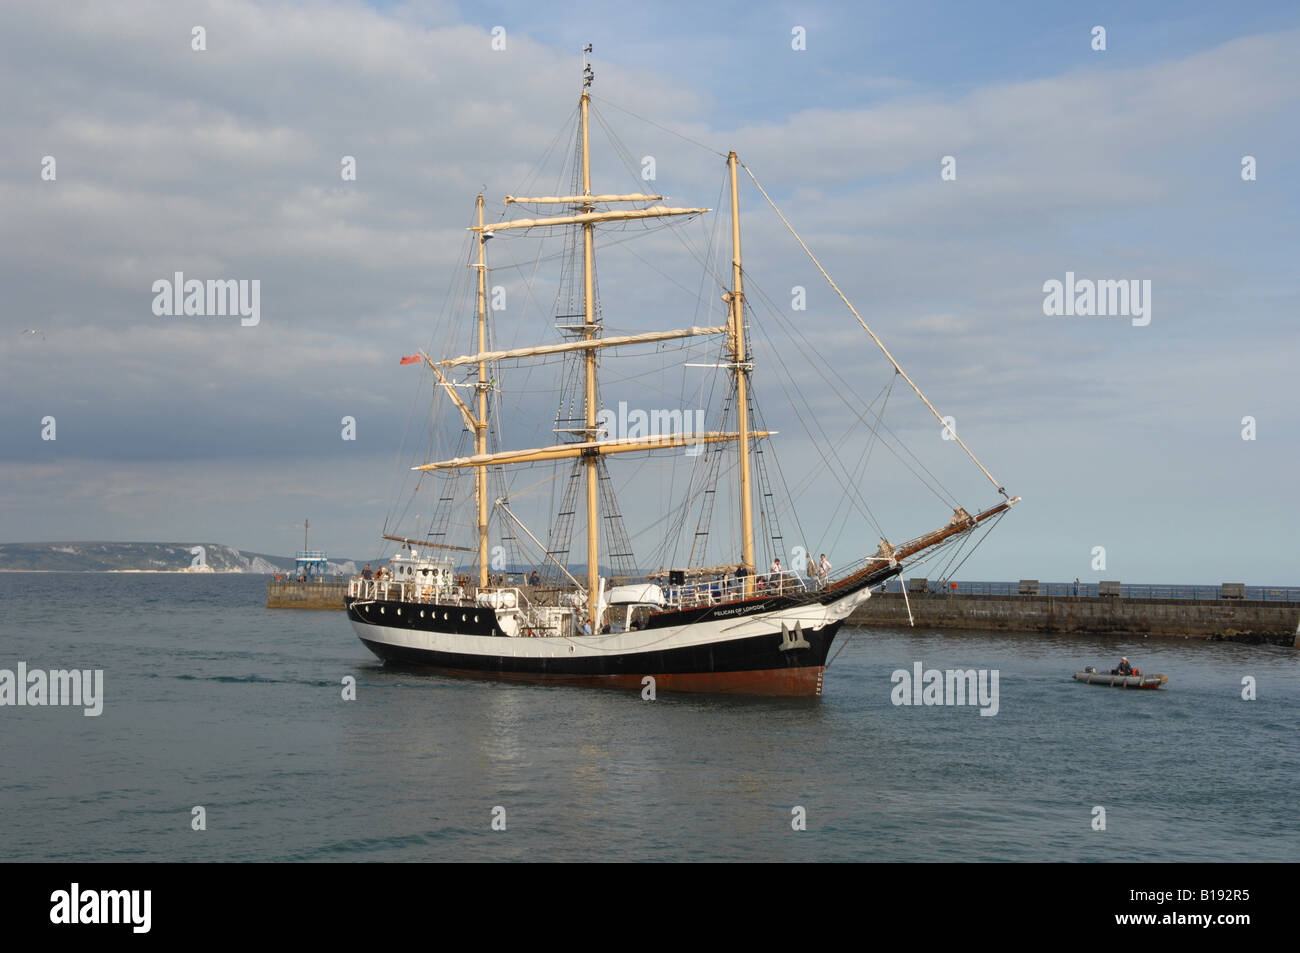 Le grand voilier 'Pelican de Londres' navigue dans le port de Weymouth, dans le Dorset Banque D'Images